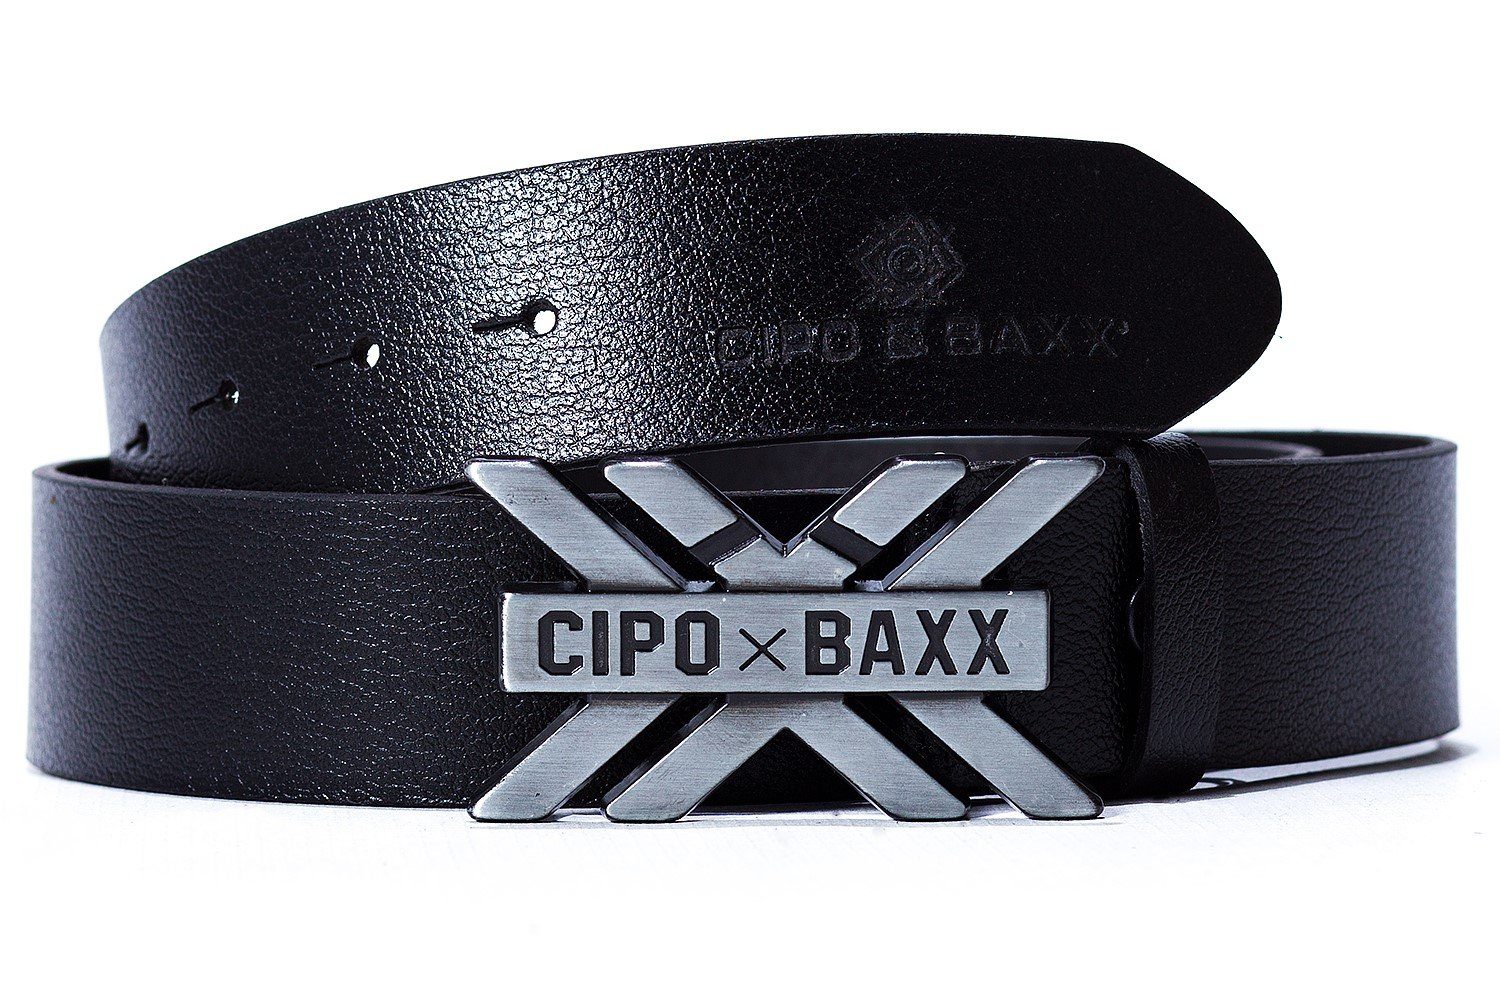 bekannte Marke Cipo & Baxx Ledergürtel Eleganter BA-CG147 Gürtel Schnalle mit schwarz einer aus gebürsteten Metall